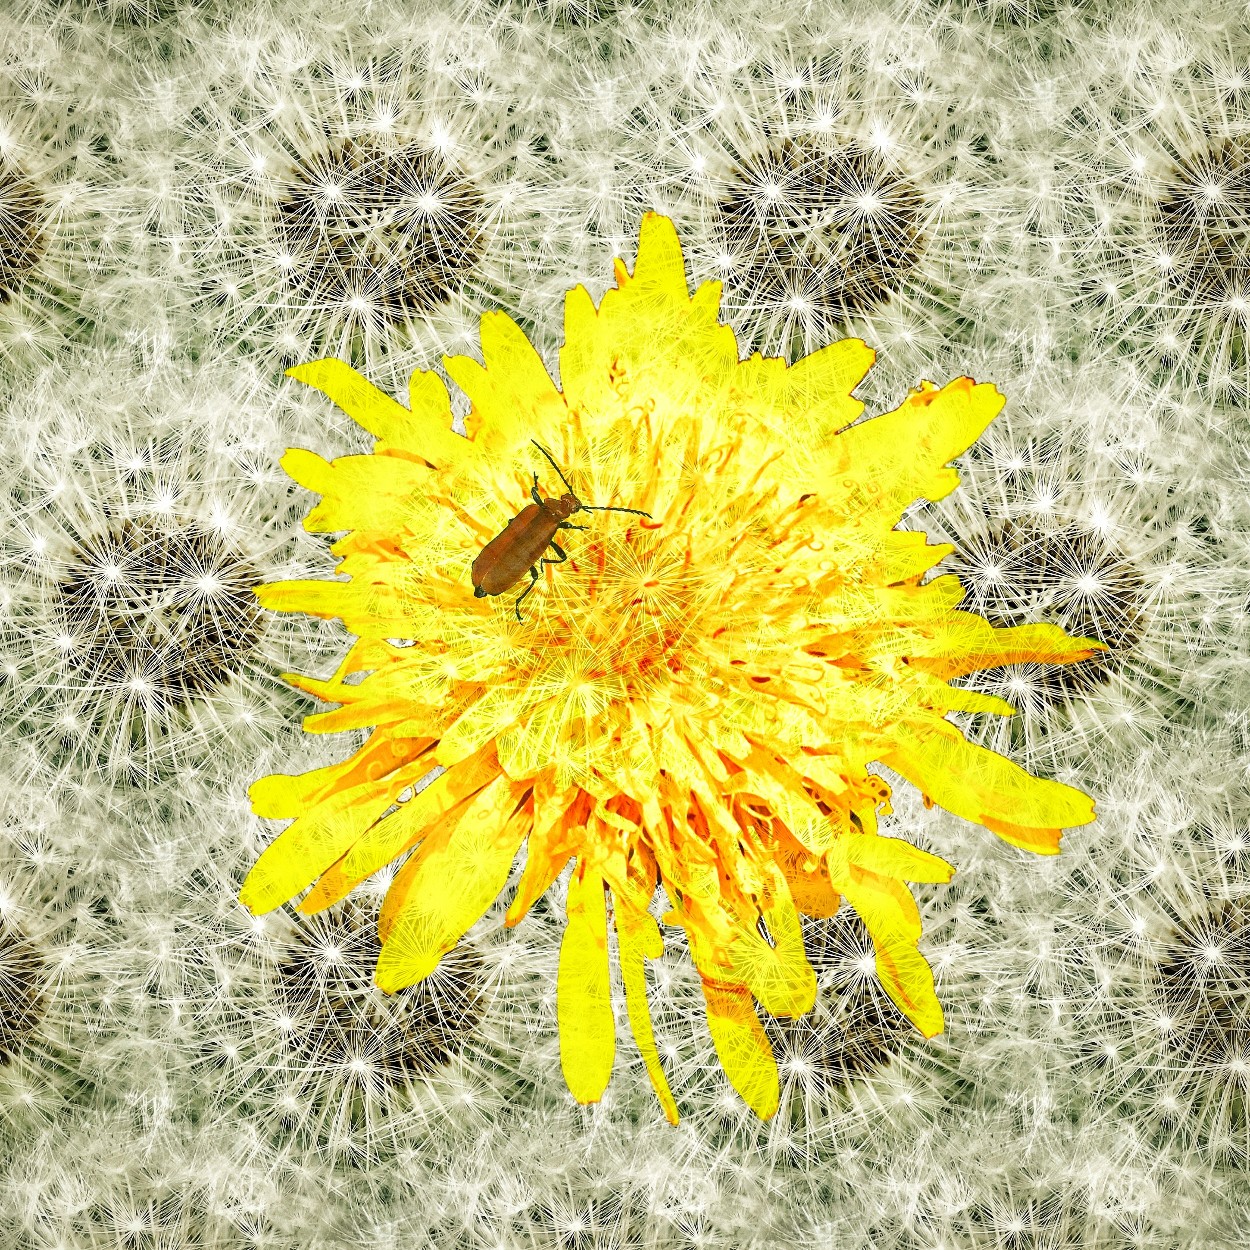 Foto-collage van paardenbloem-pluizenbollen en een bloem met een kever erop, van Ruben van Gogh